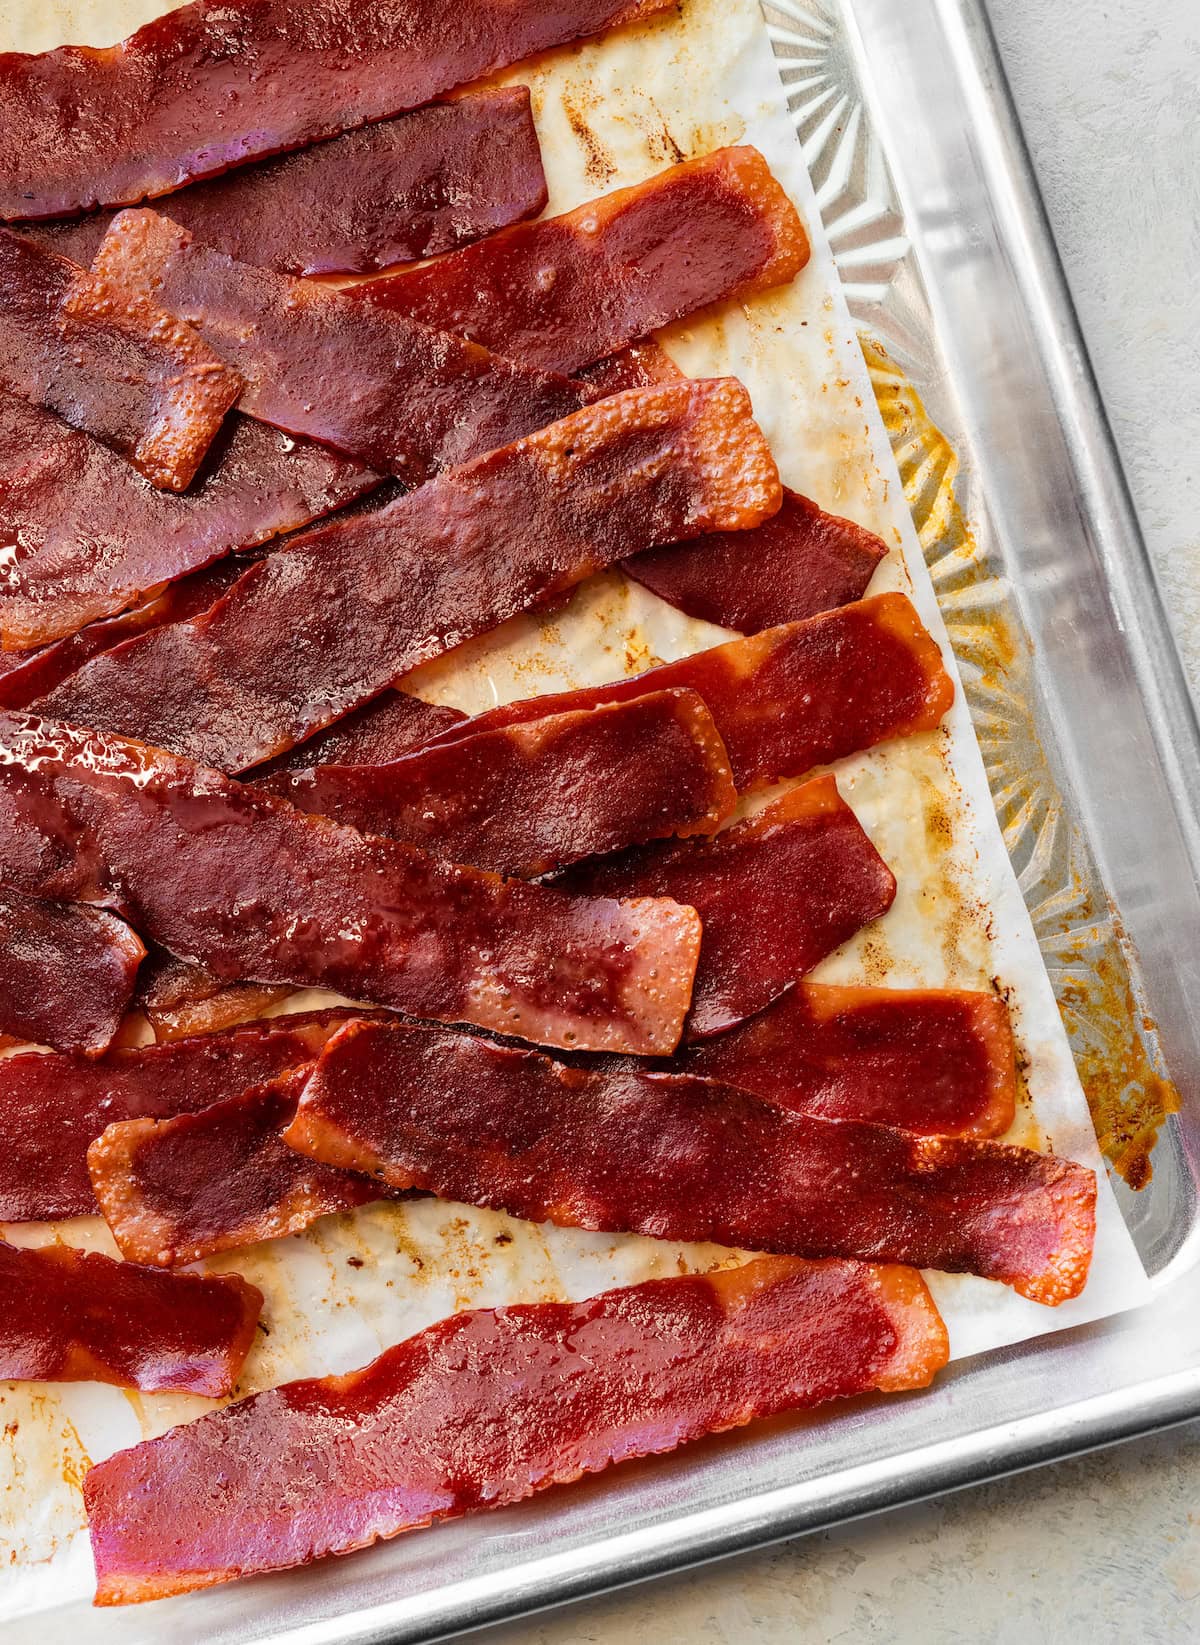 Turkey bacon on a baking tray.